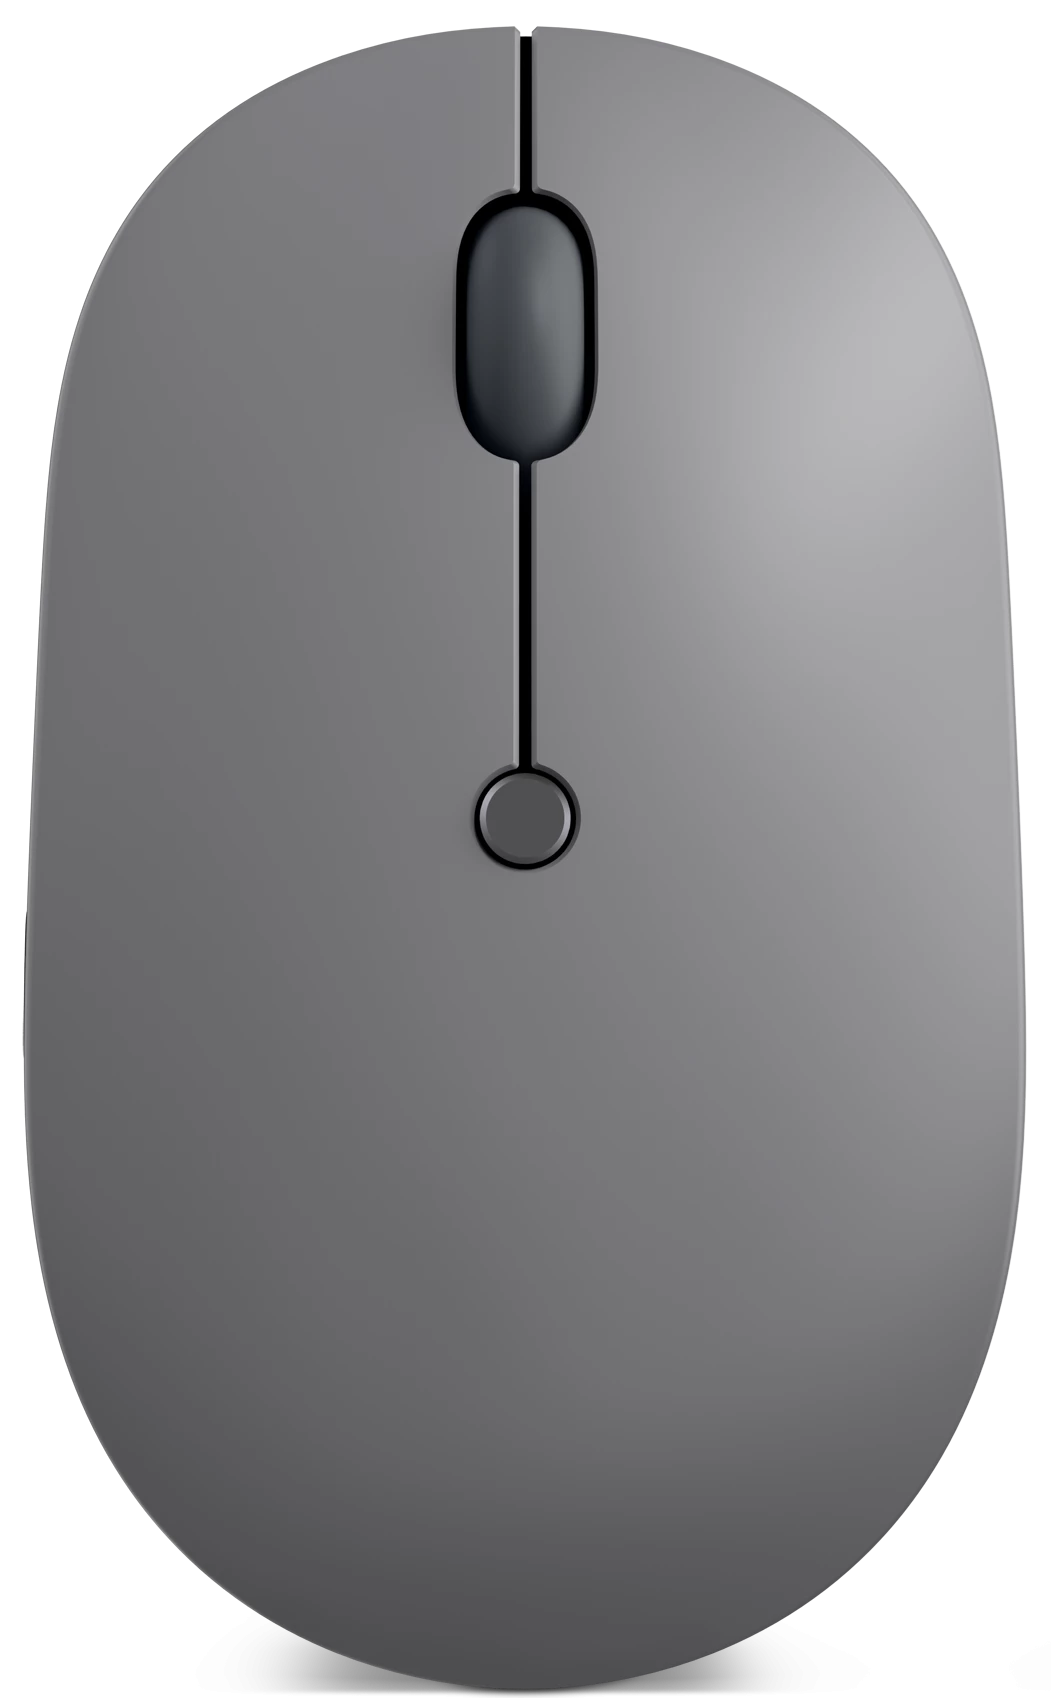 Мышь беспроводная Lenovo Go USB-C Wireless Mouse, 2400dpi, оптическая светодиодная, USB Type-C, серый (4Y51C21216)